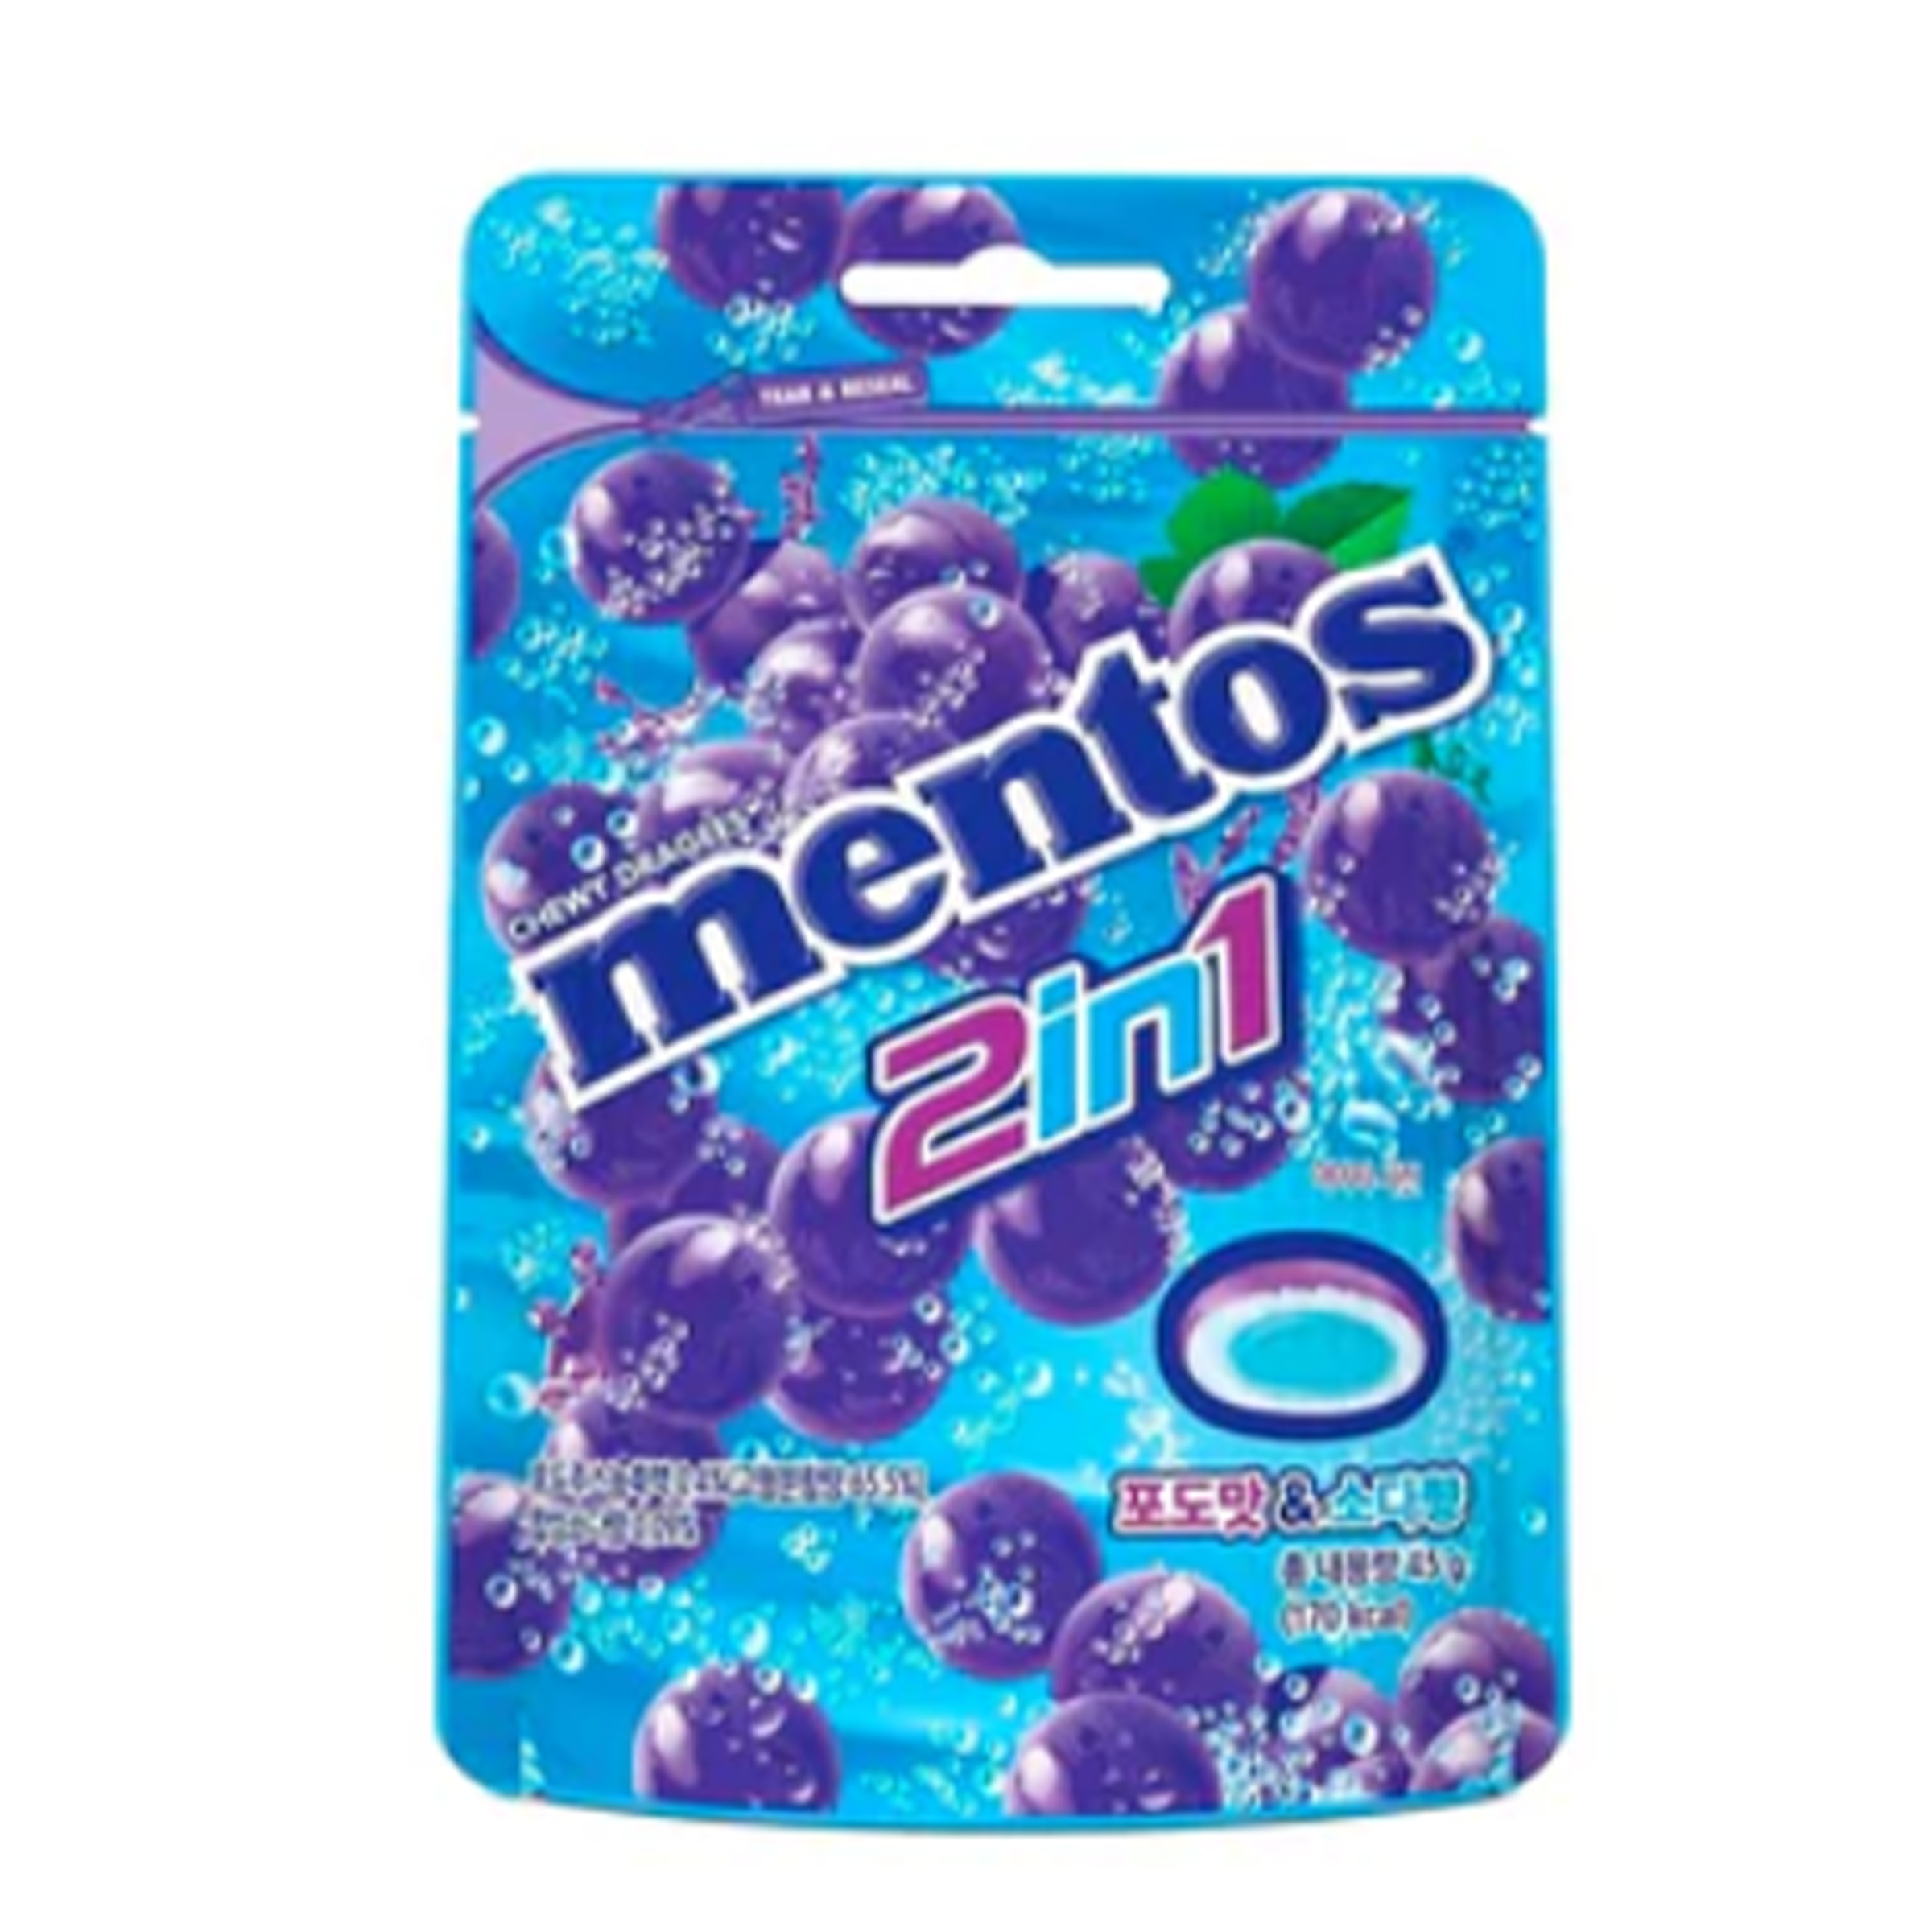 Mentos Duo 2 in 1 - Grape & Soda (Korea)